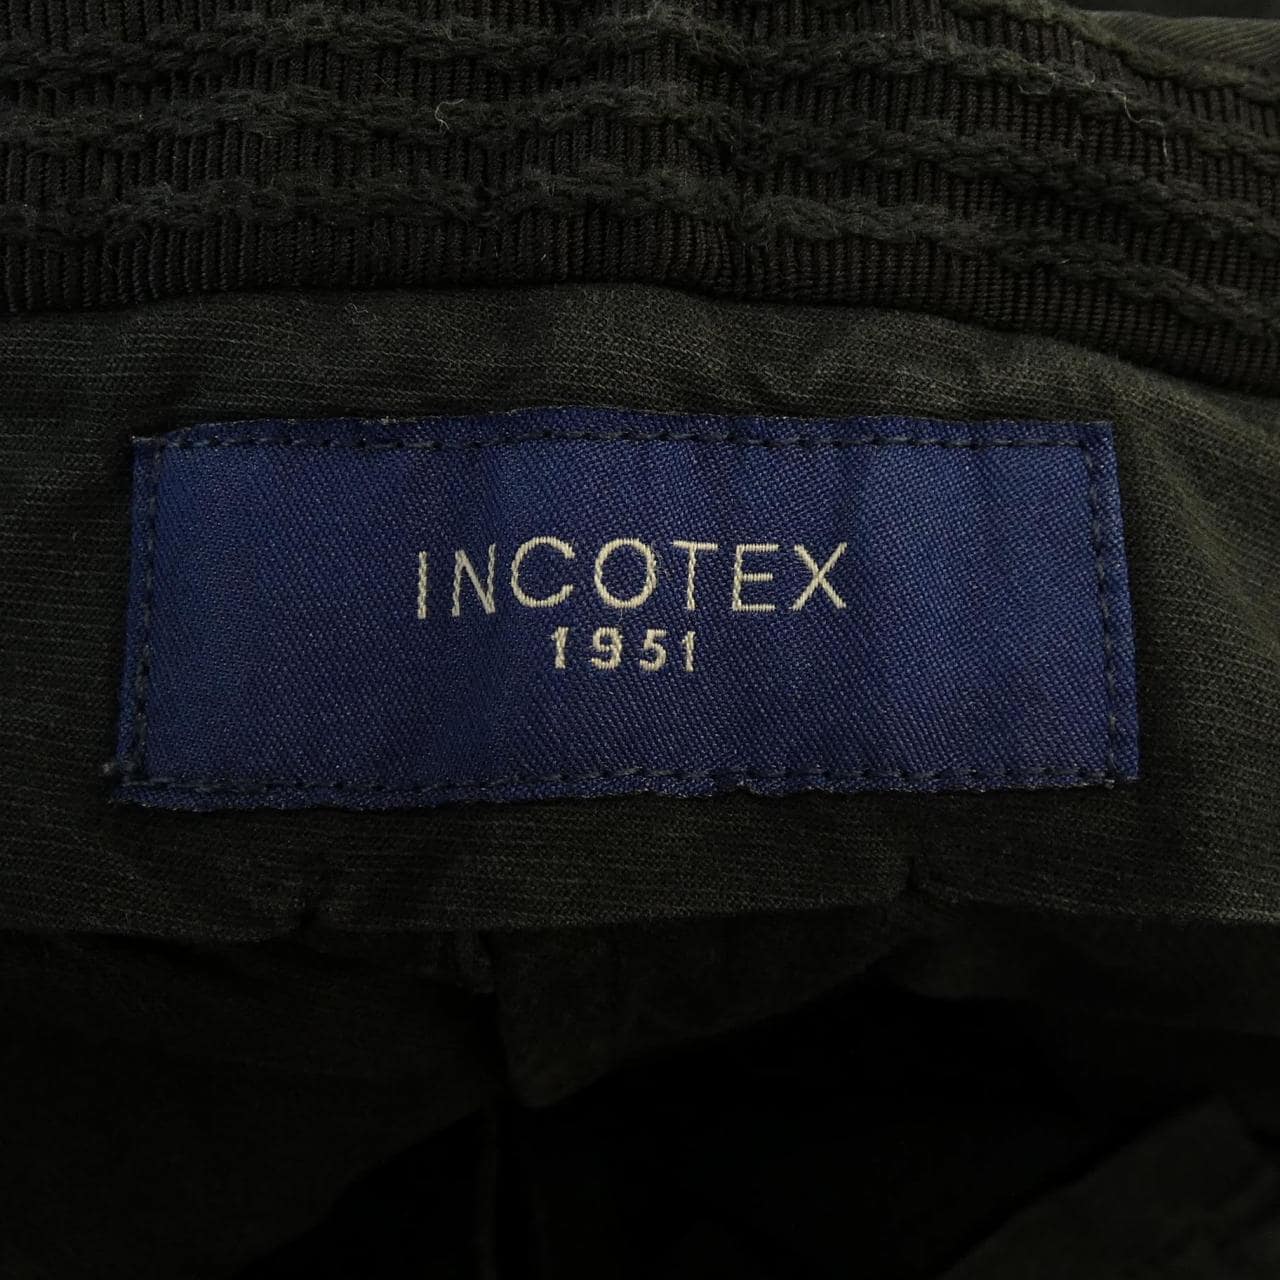 インコテックス INCOTEX ショートパンツ